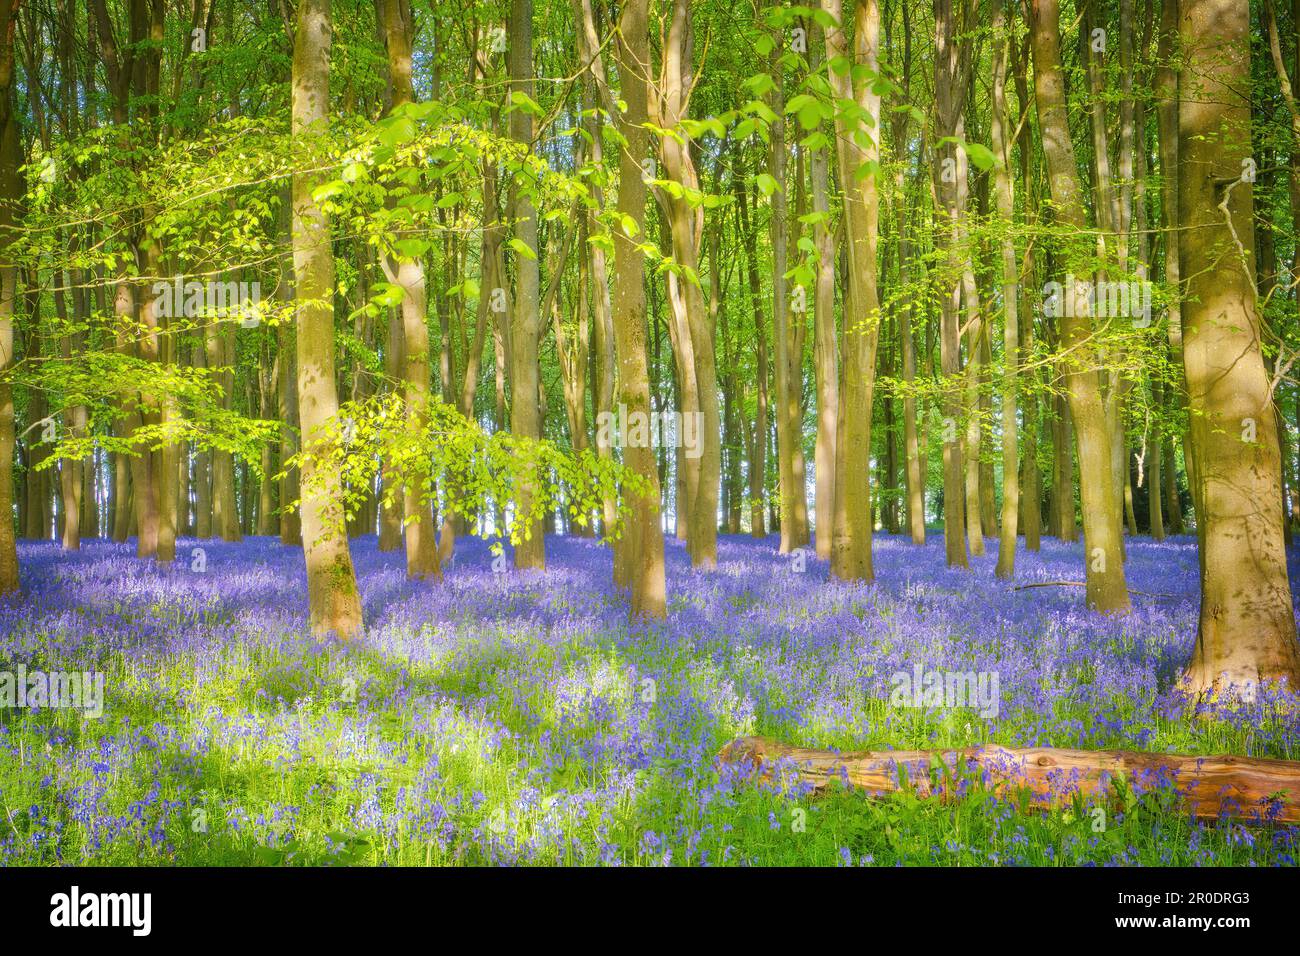 Das sanfte Sonnenlicht im Frühling erhellt den wunderschönen Teppich aus Blaubäumen, der die Buchenbäume im Badbury Clump, Oxfordshire, umgibt. Stockfoto